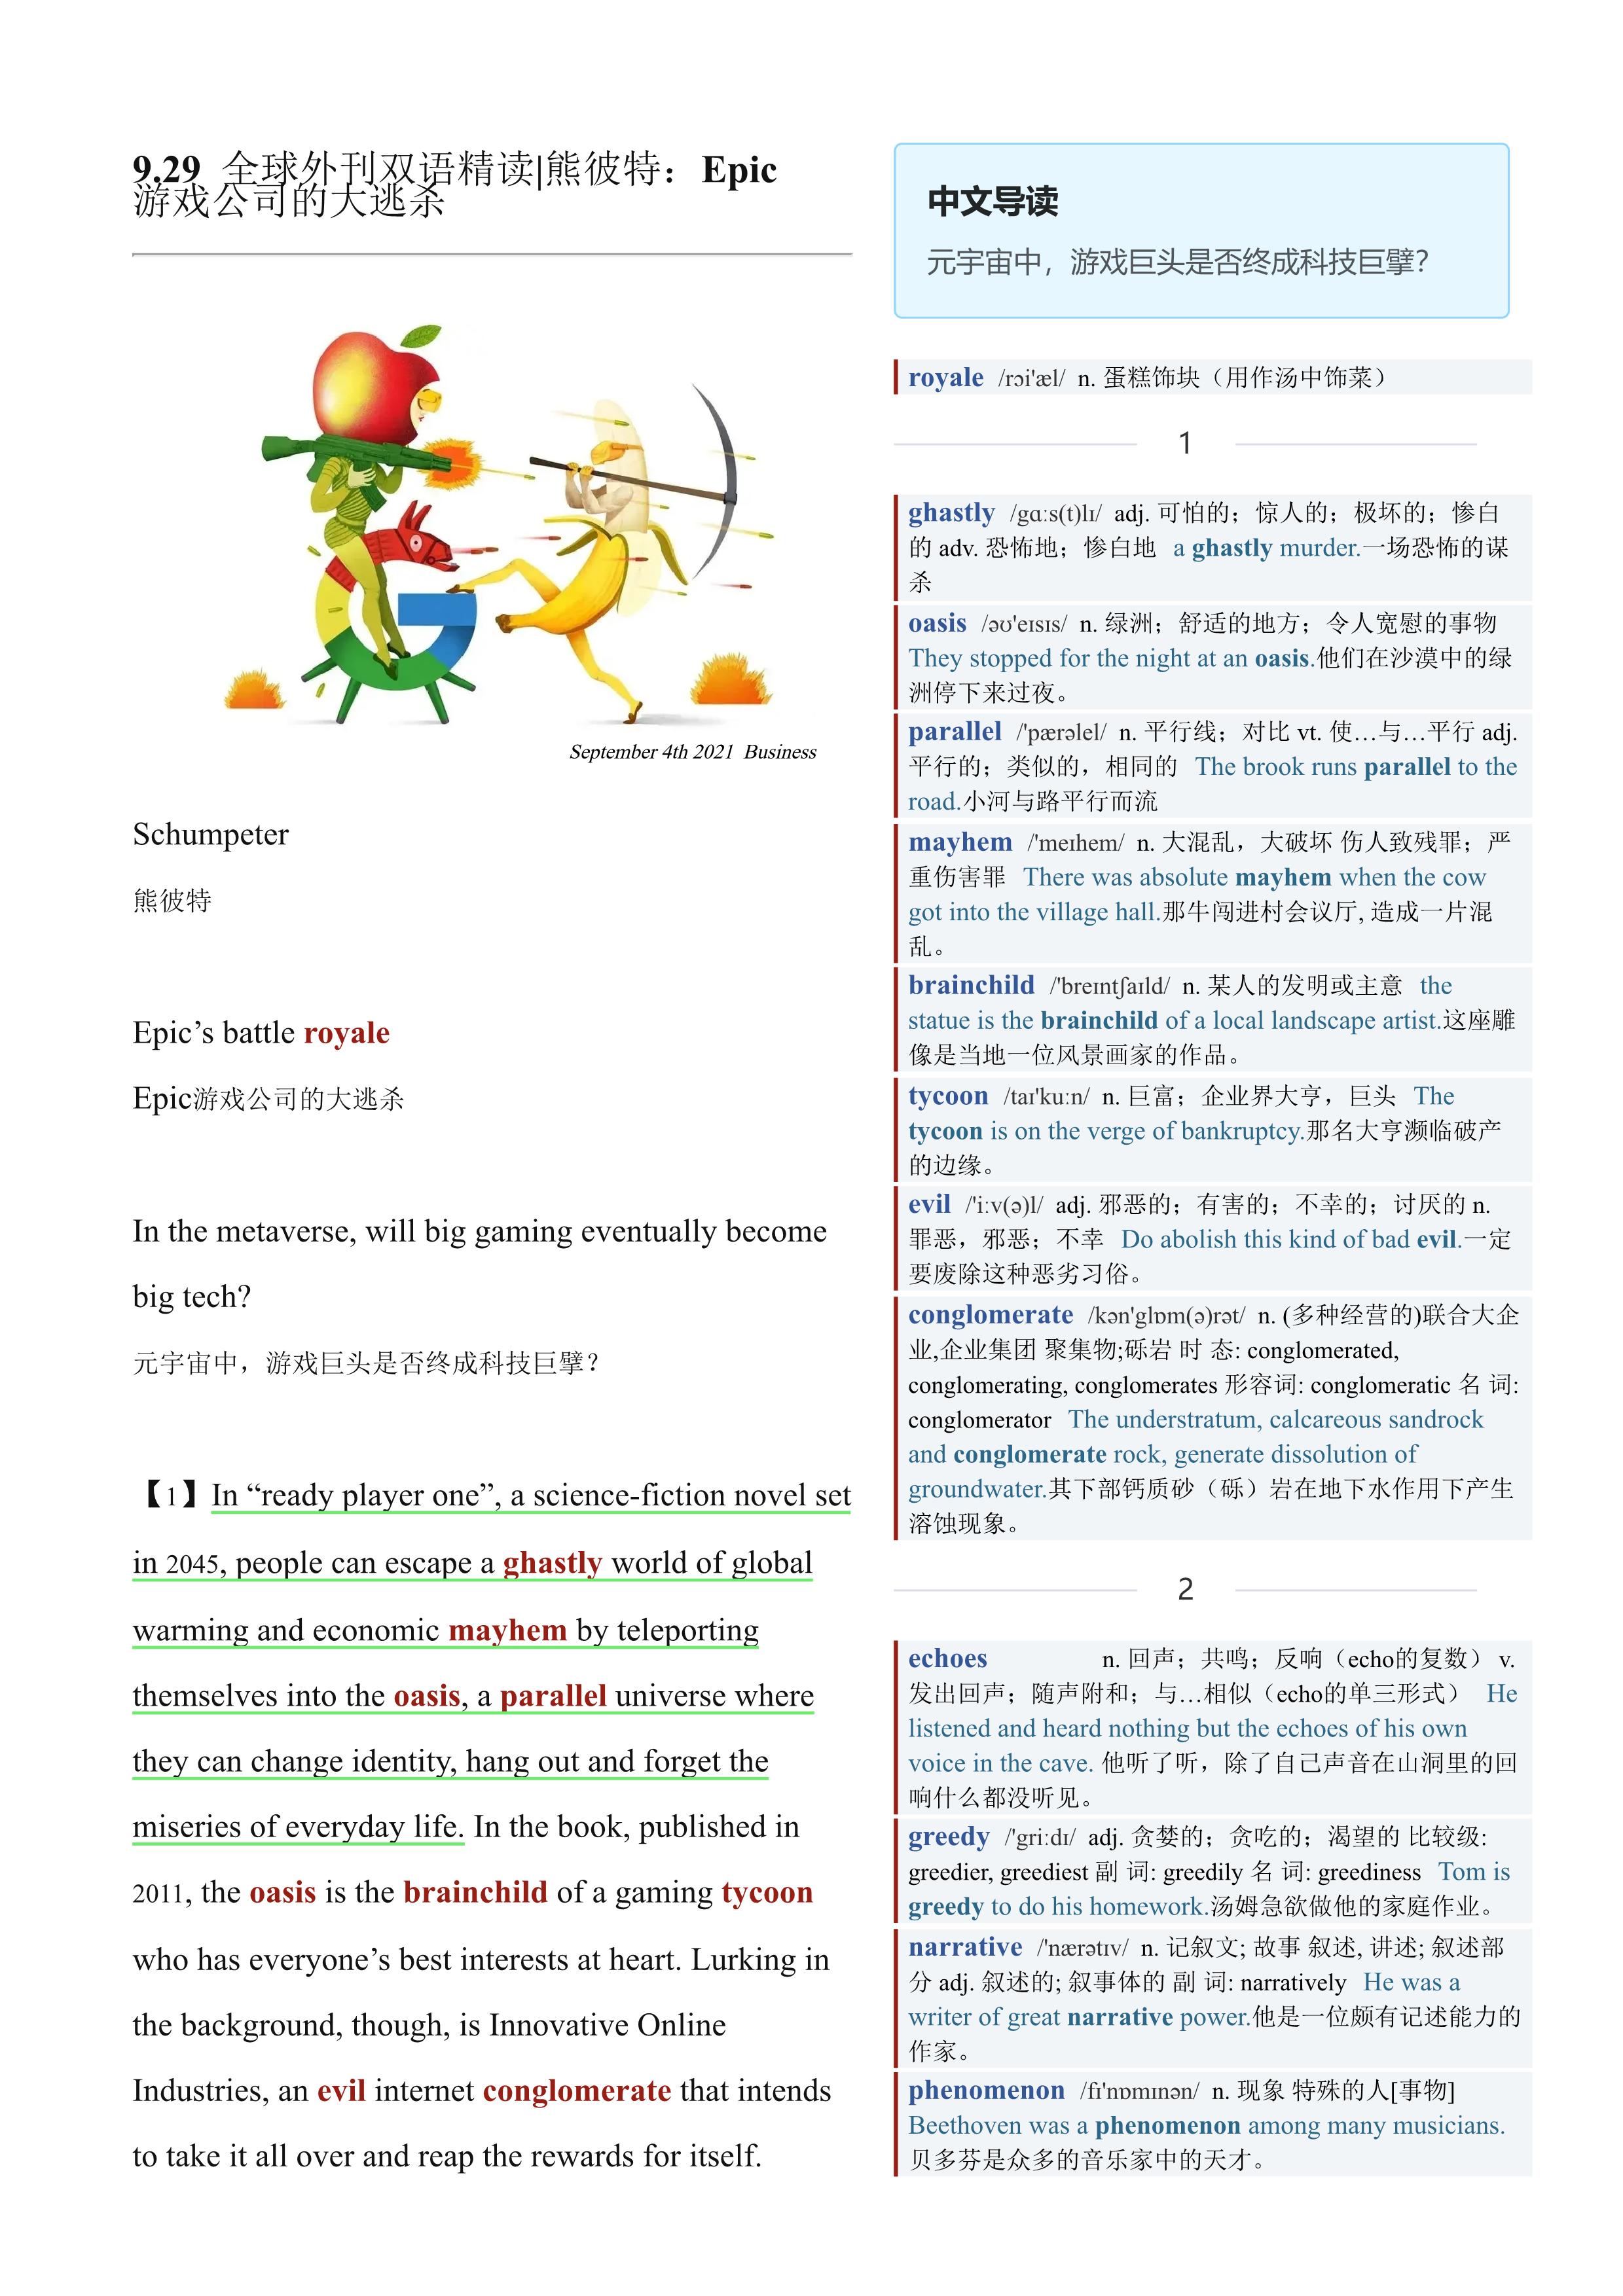 2021.09.29 经济学人双语精读丨熊彼特：Epic游戏公司的大逃杀 (.PDF/DOC/MP3)